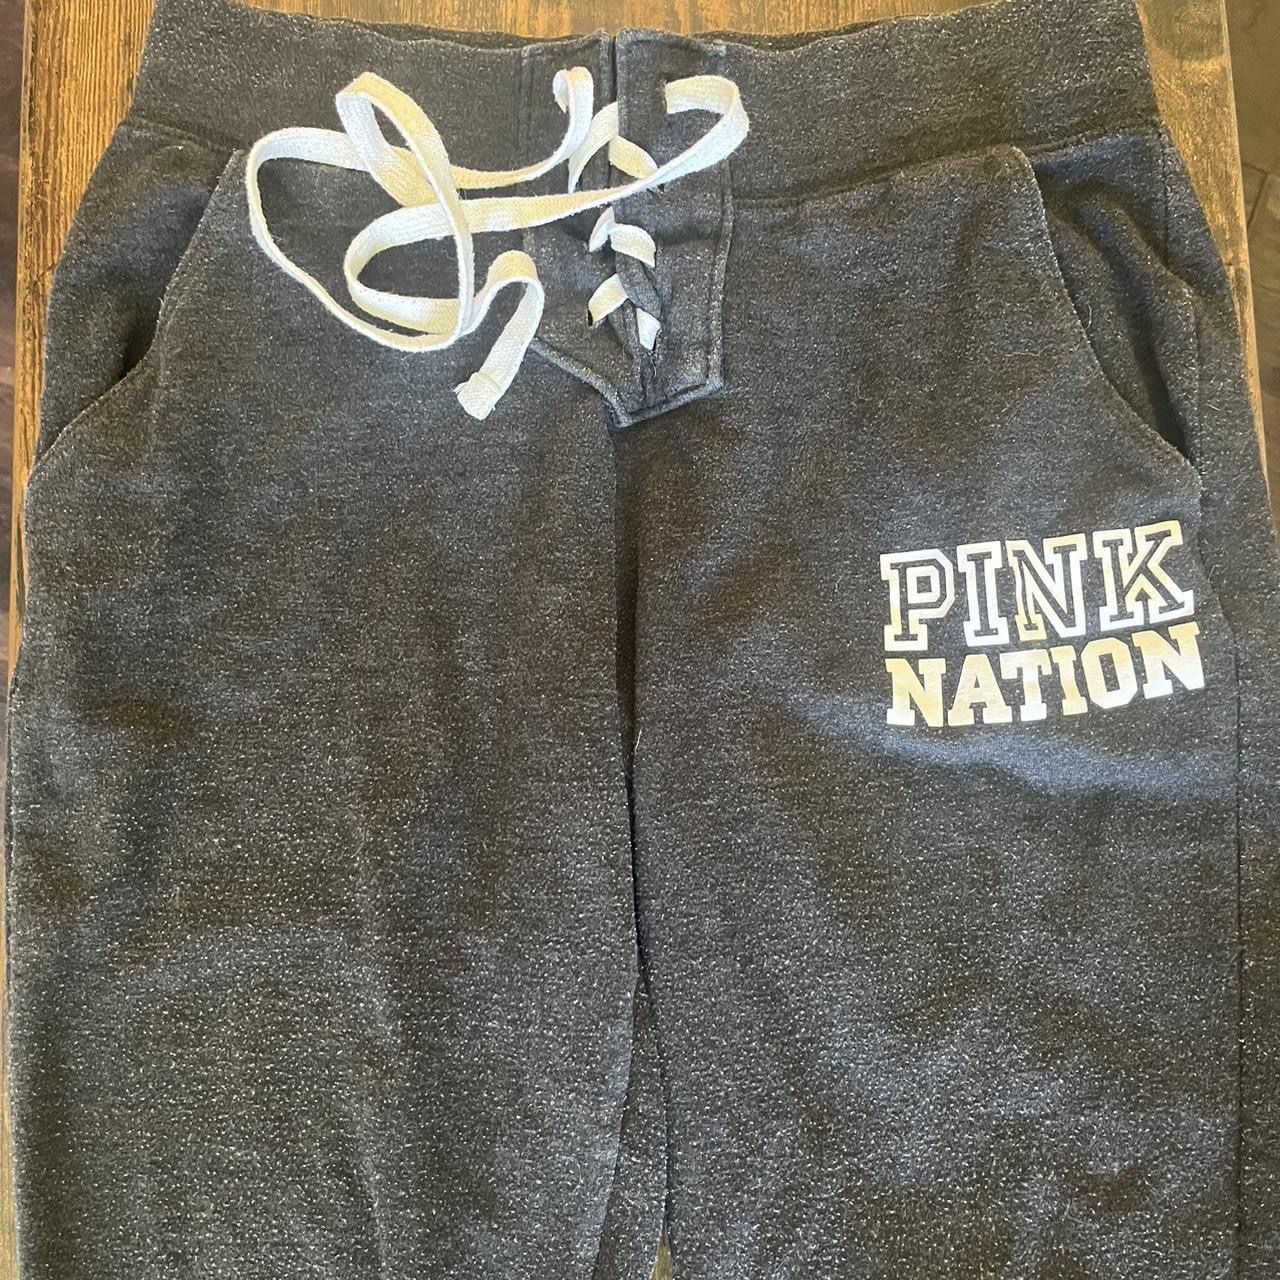 victorias secret PINK NATION athletic sweat pants size XS